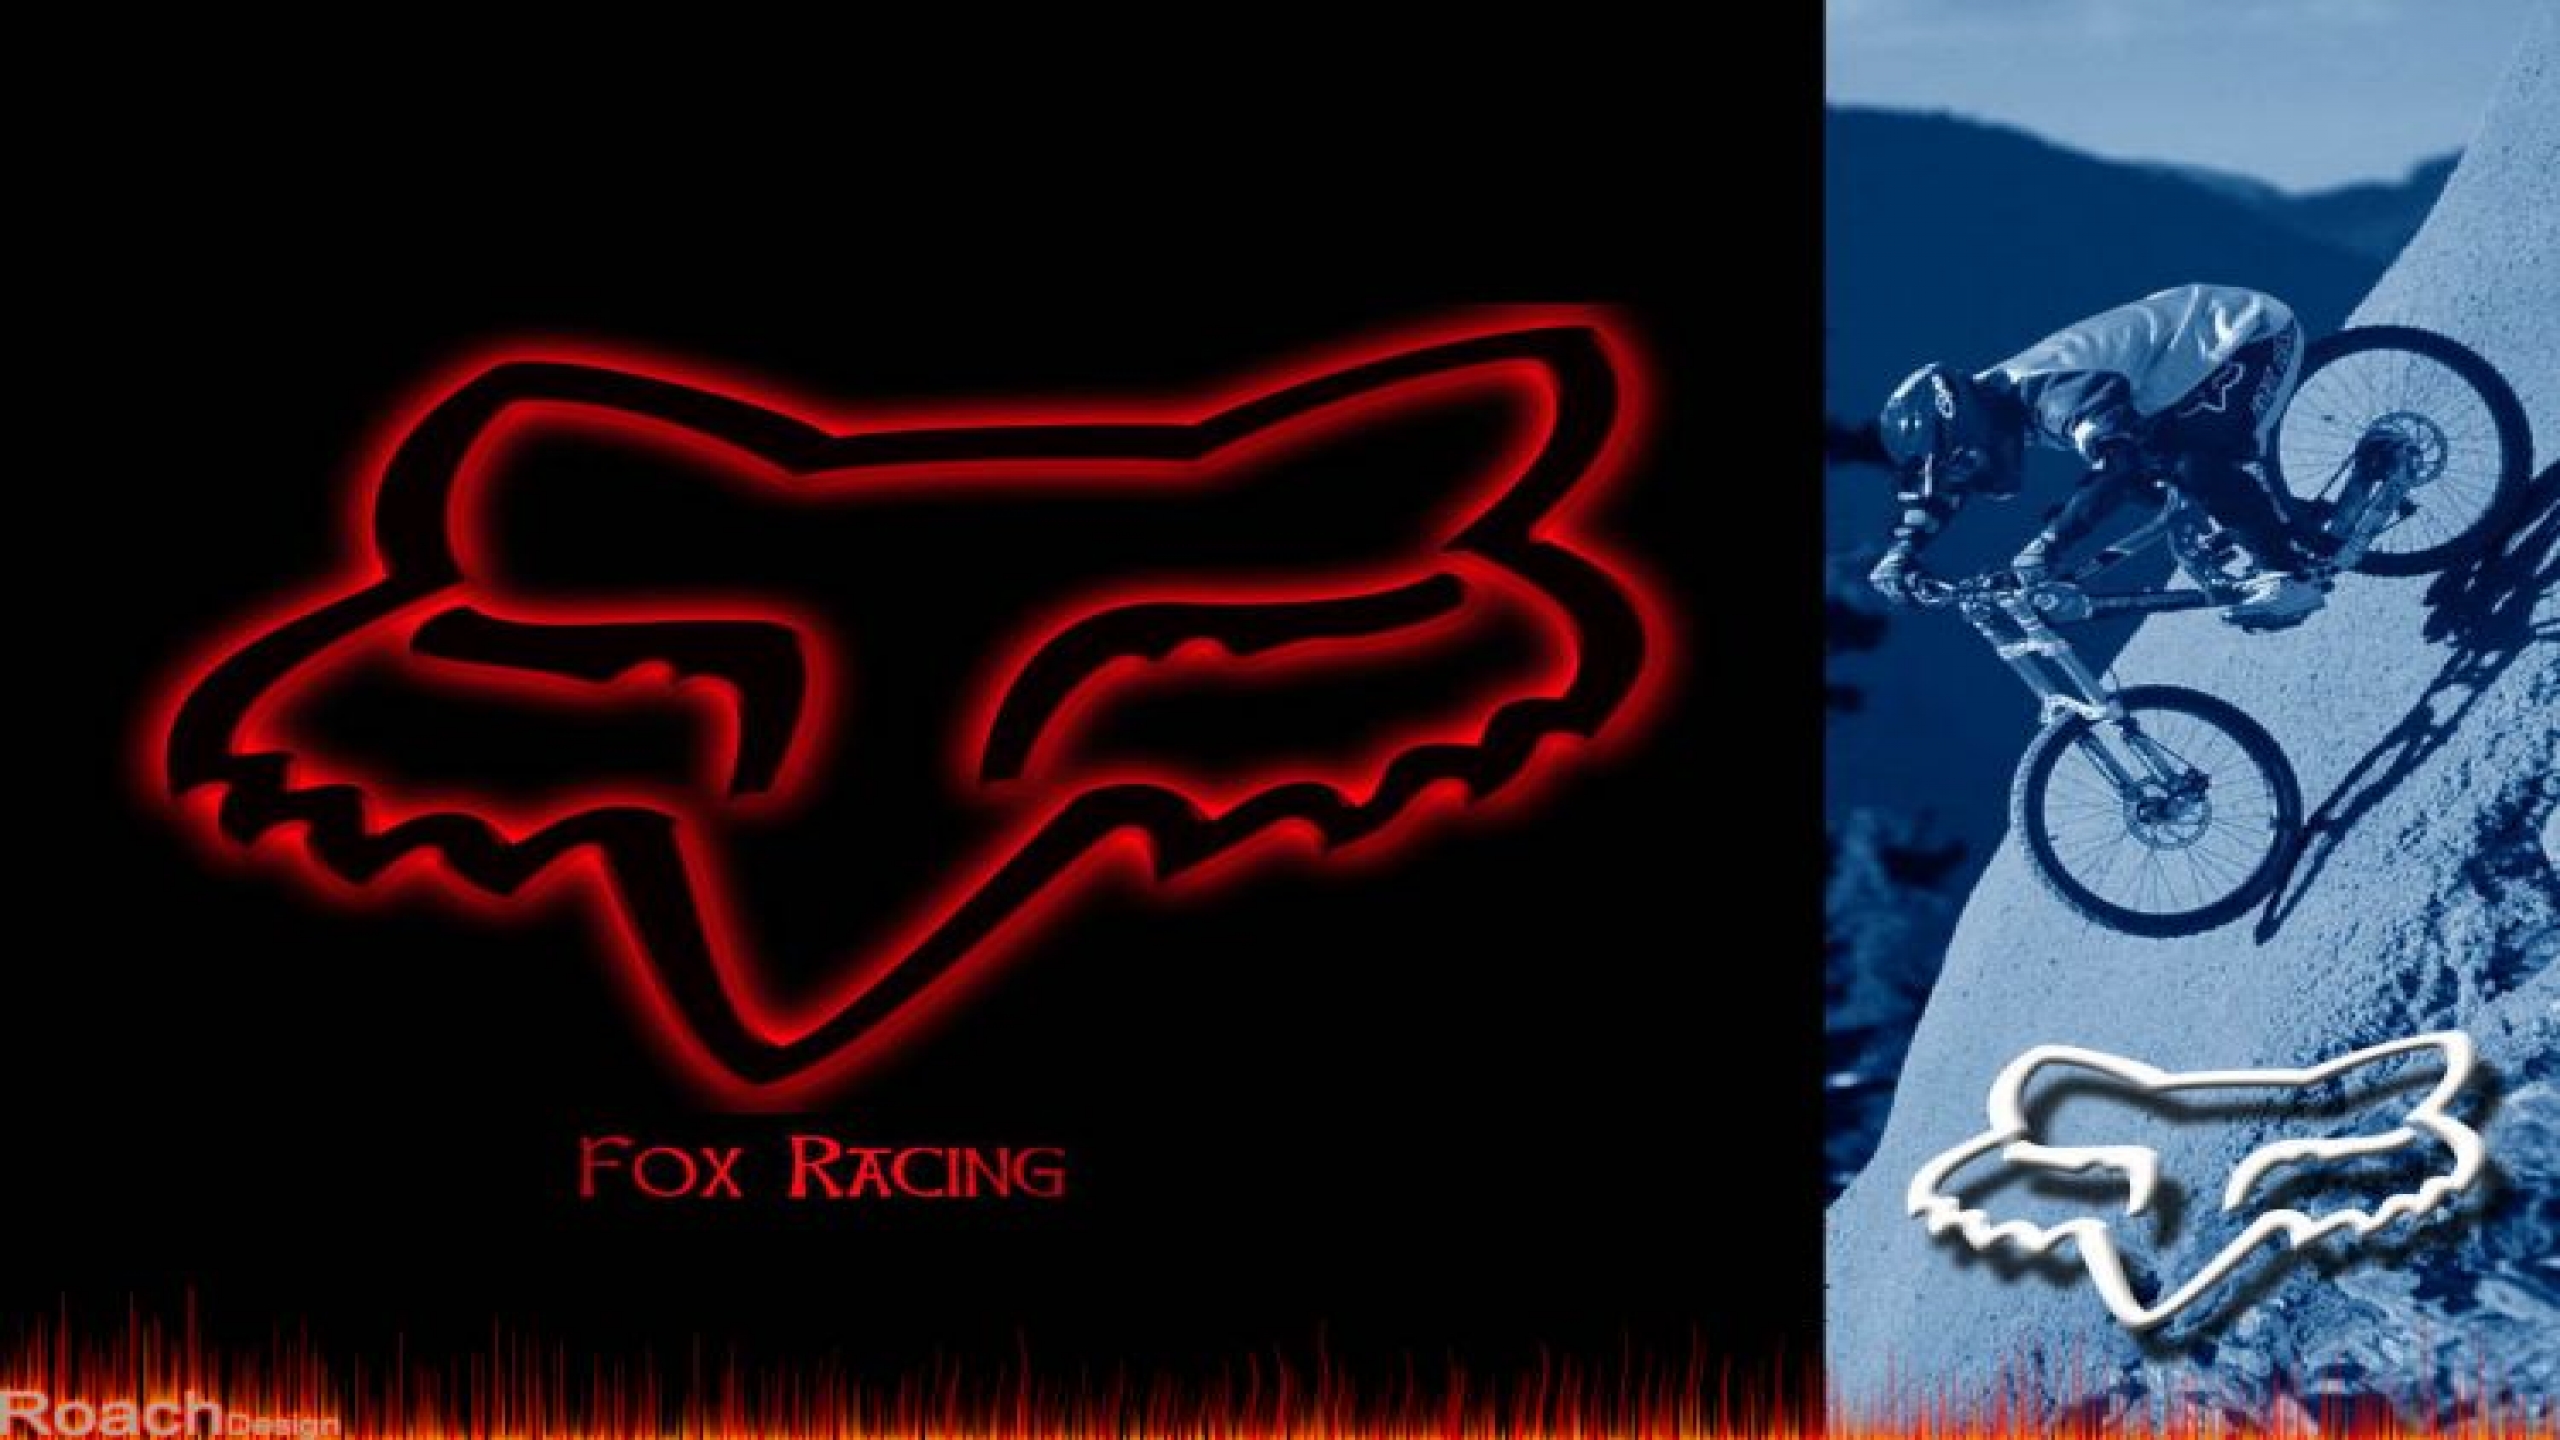 Wallpaper Fox Racing Wallpapers